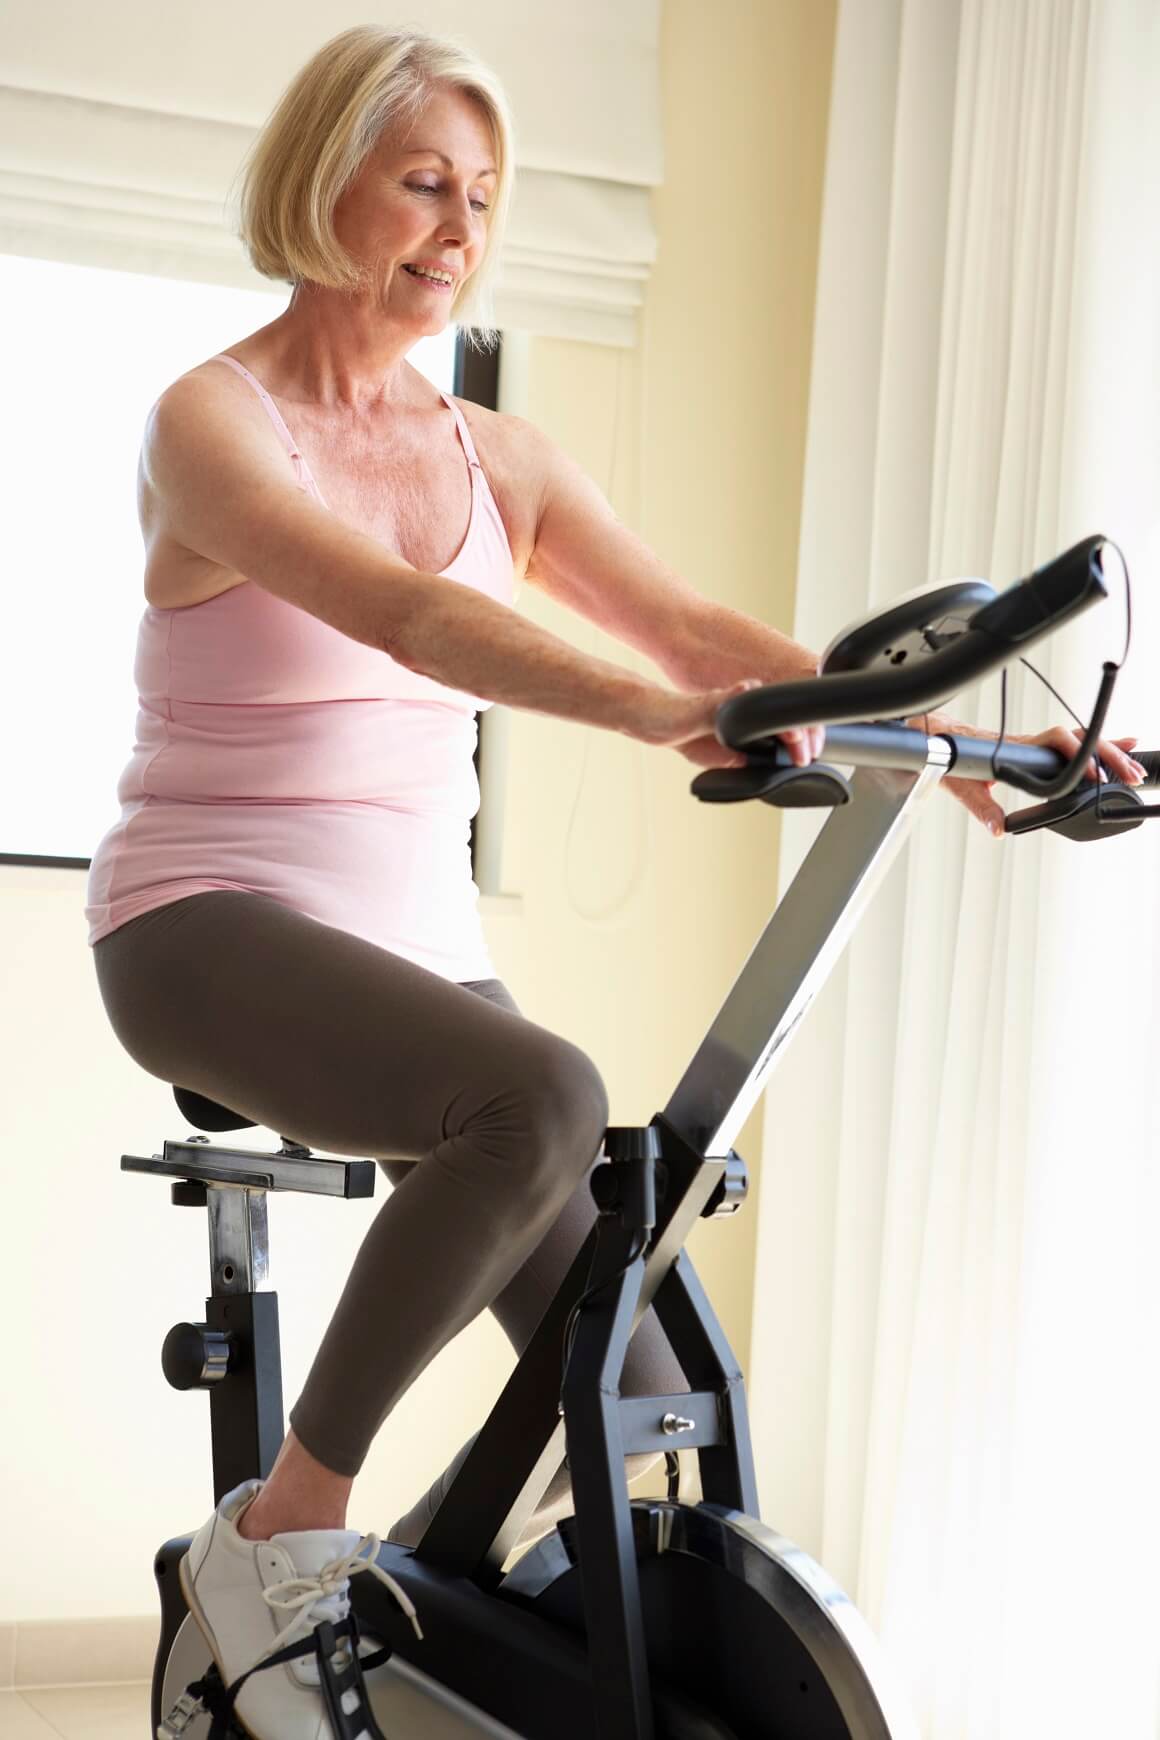 Sobni bicikli nude siguran i učinkovit kardio trening za starije osobe